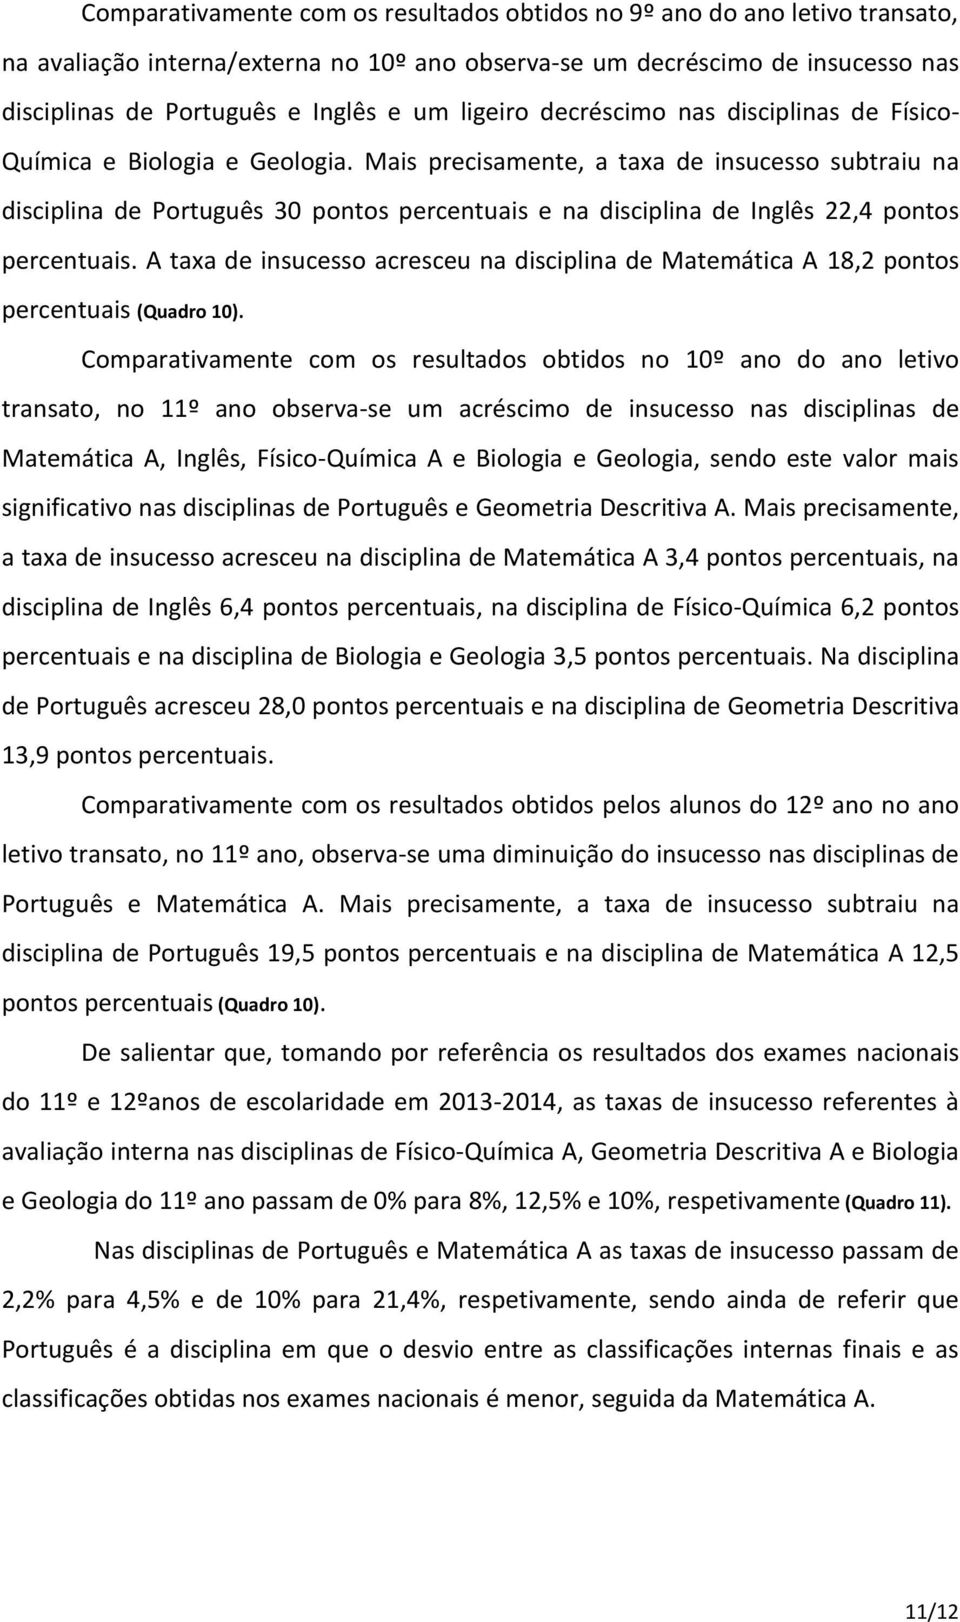 Mais precisamente, a taxa de insucesso subtraiu na disciplina de Português 30 pontos percentuais e na disciplina de Inglês 22,4 pontos percentuais.